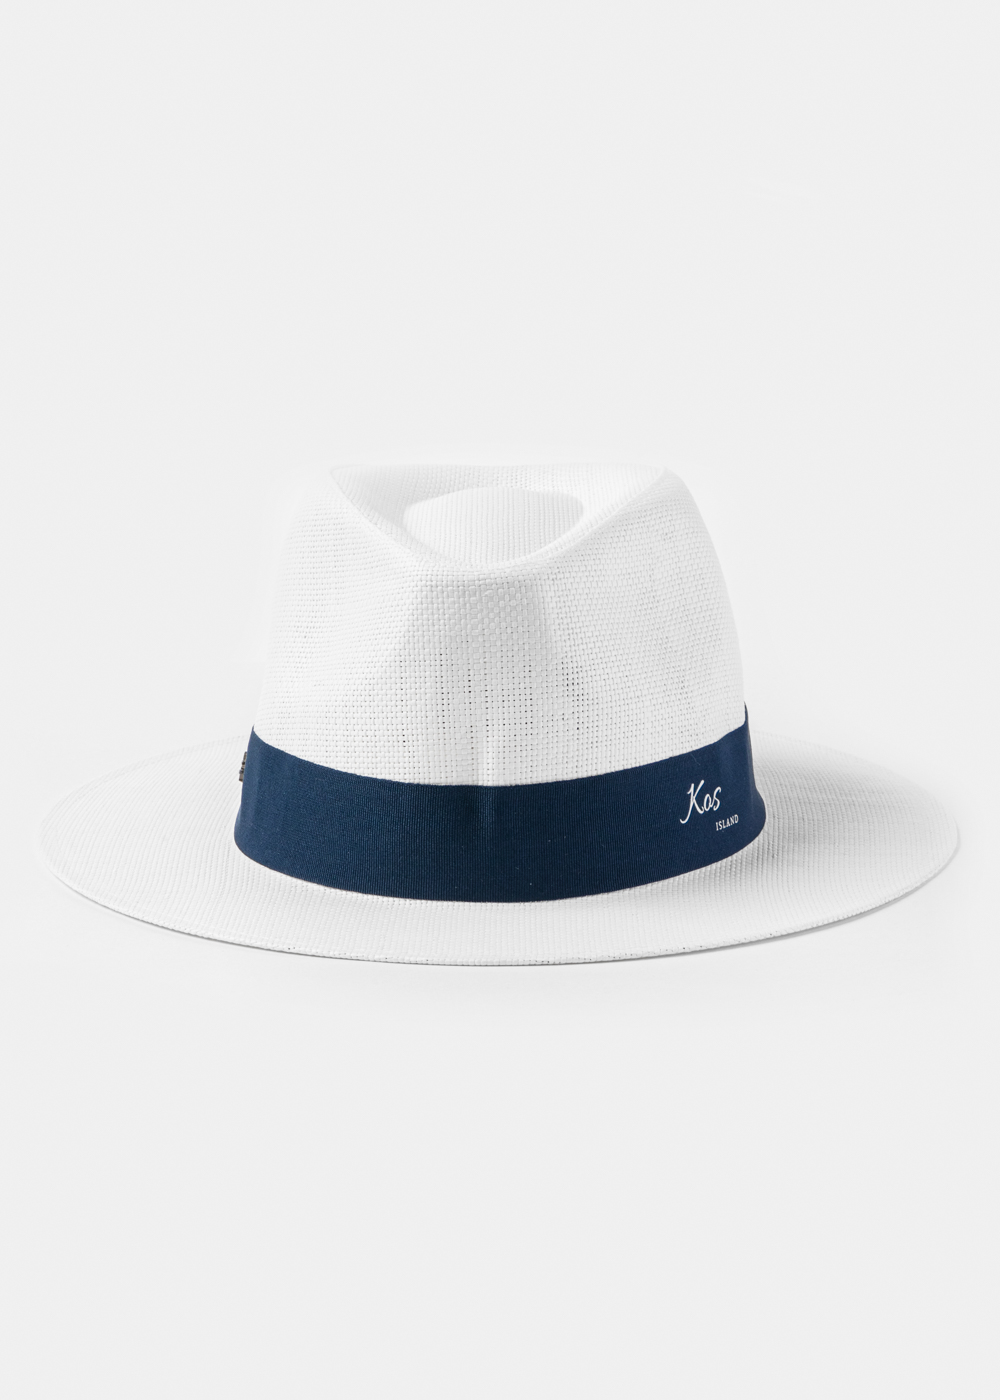 White "Kos" Panama Hat